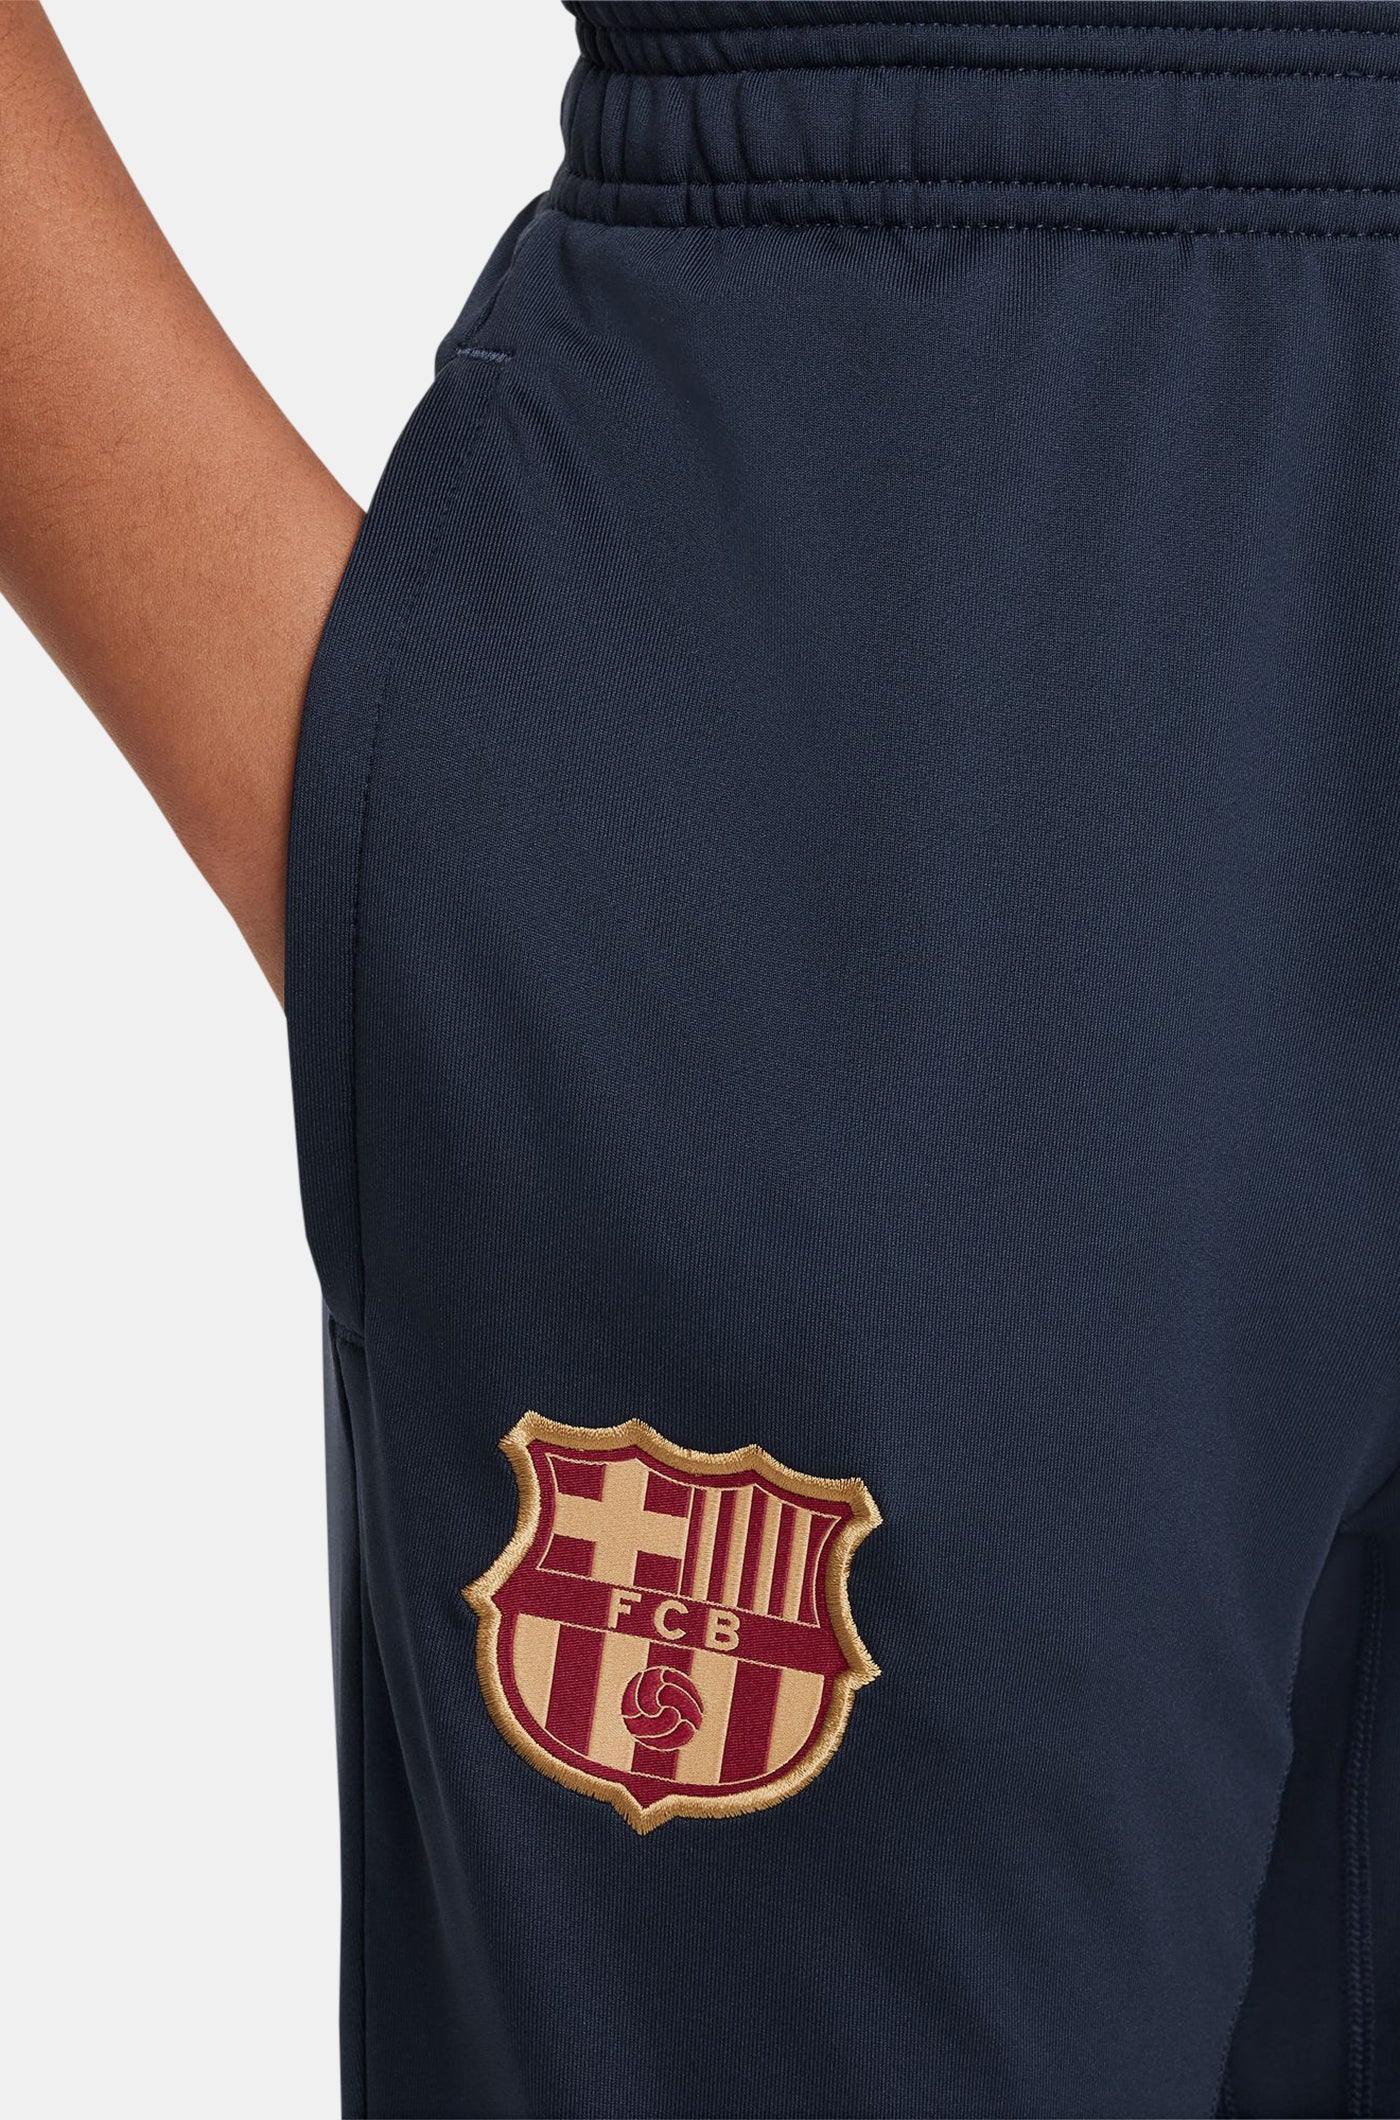 Pantalón de entrenamiento obsidiana FC Barcelona 23/24 - Junior